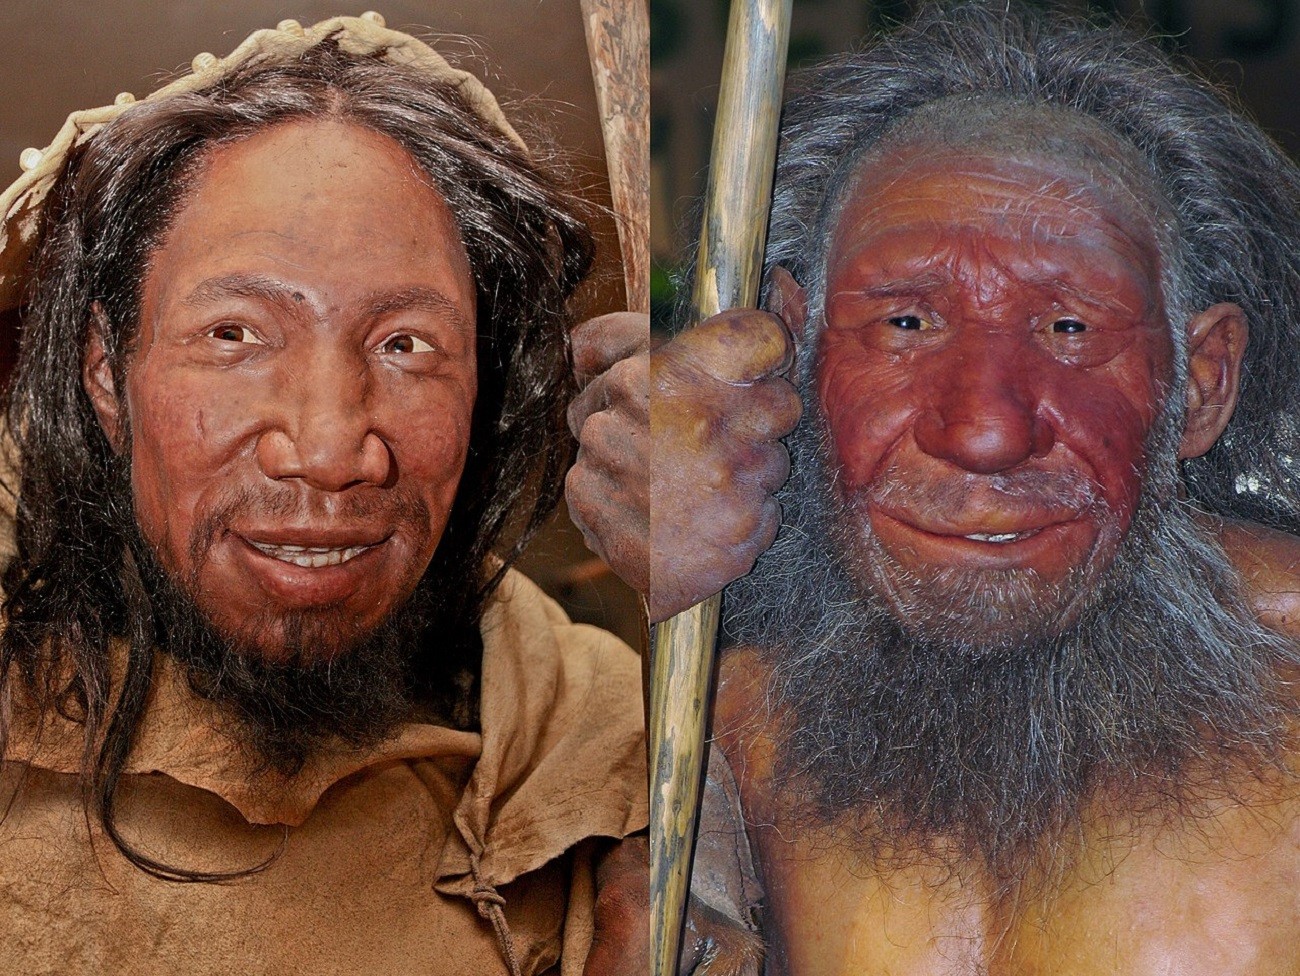 Jak często neandertalczycy uprawiali seks z Homo sapiens?